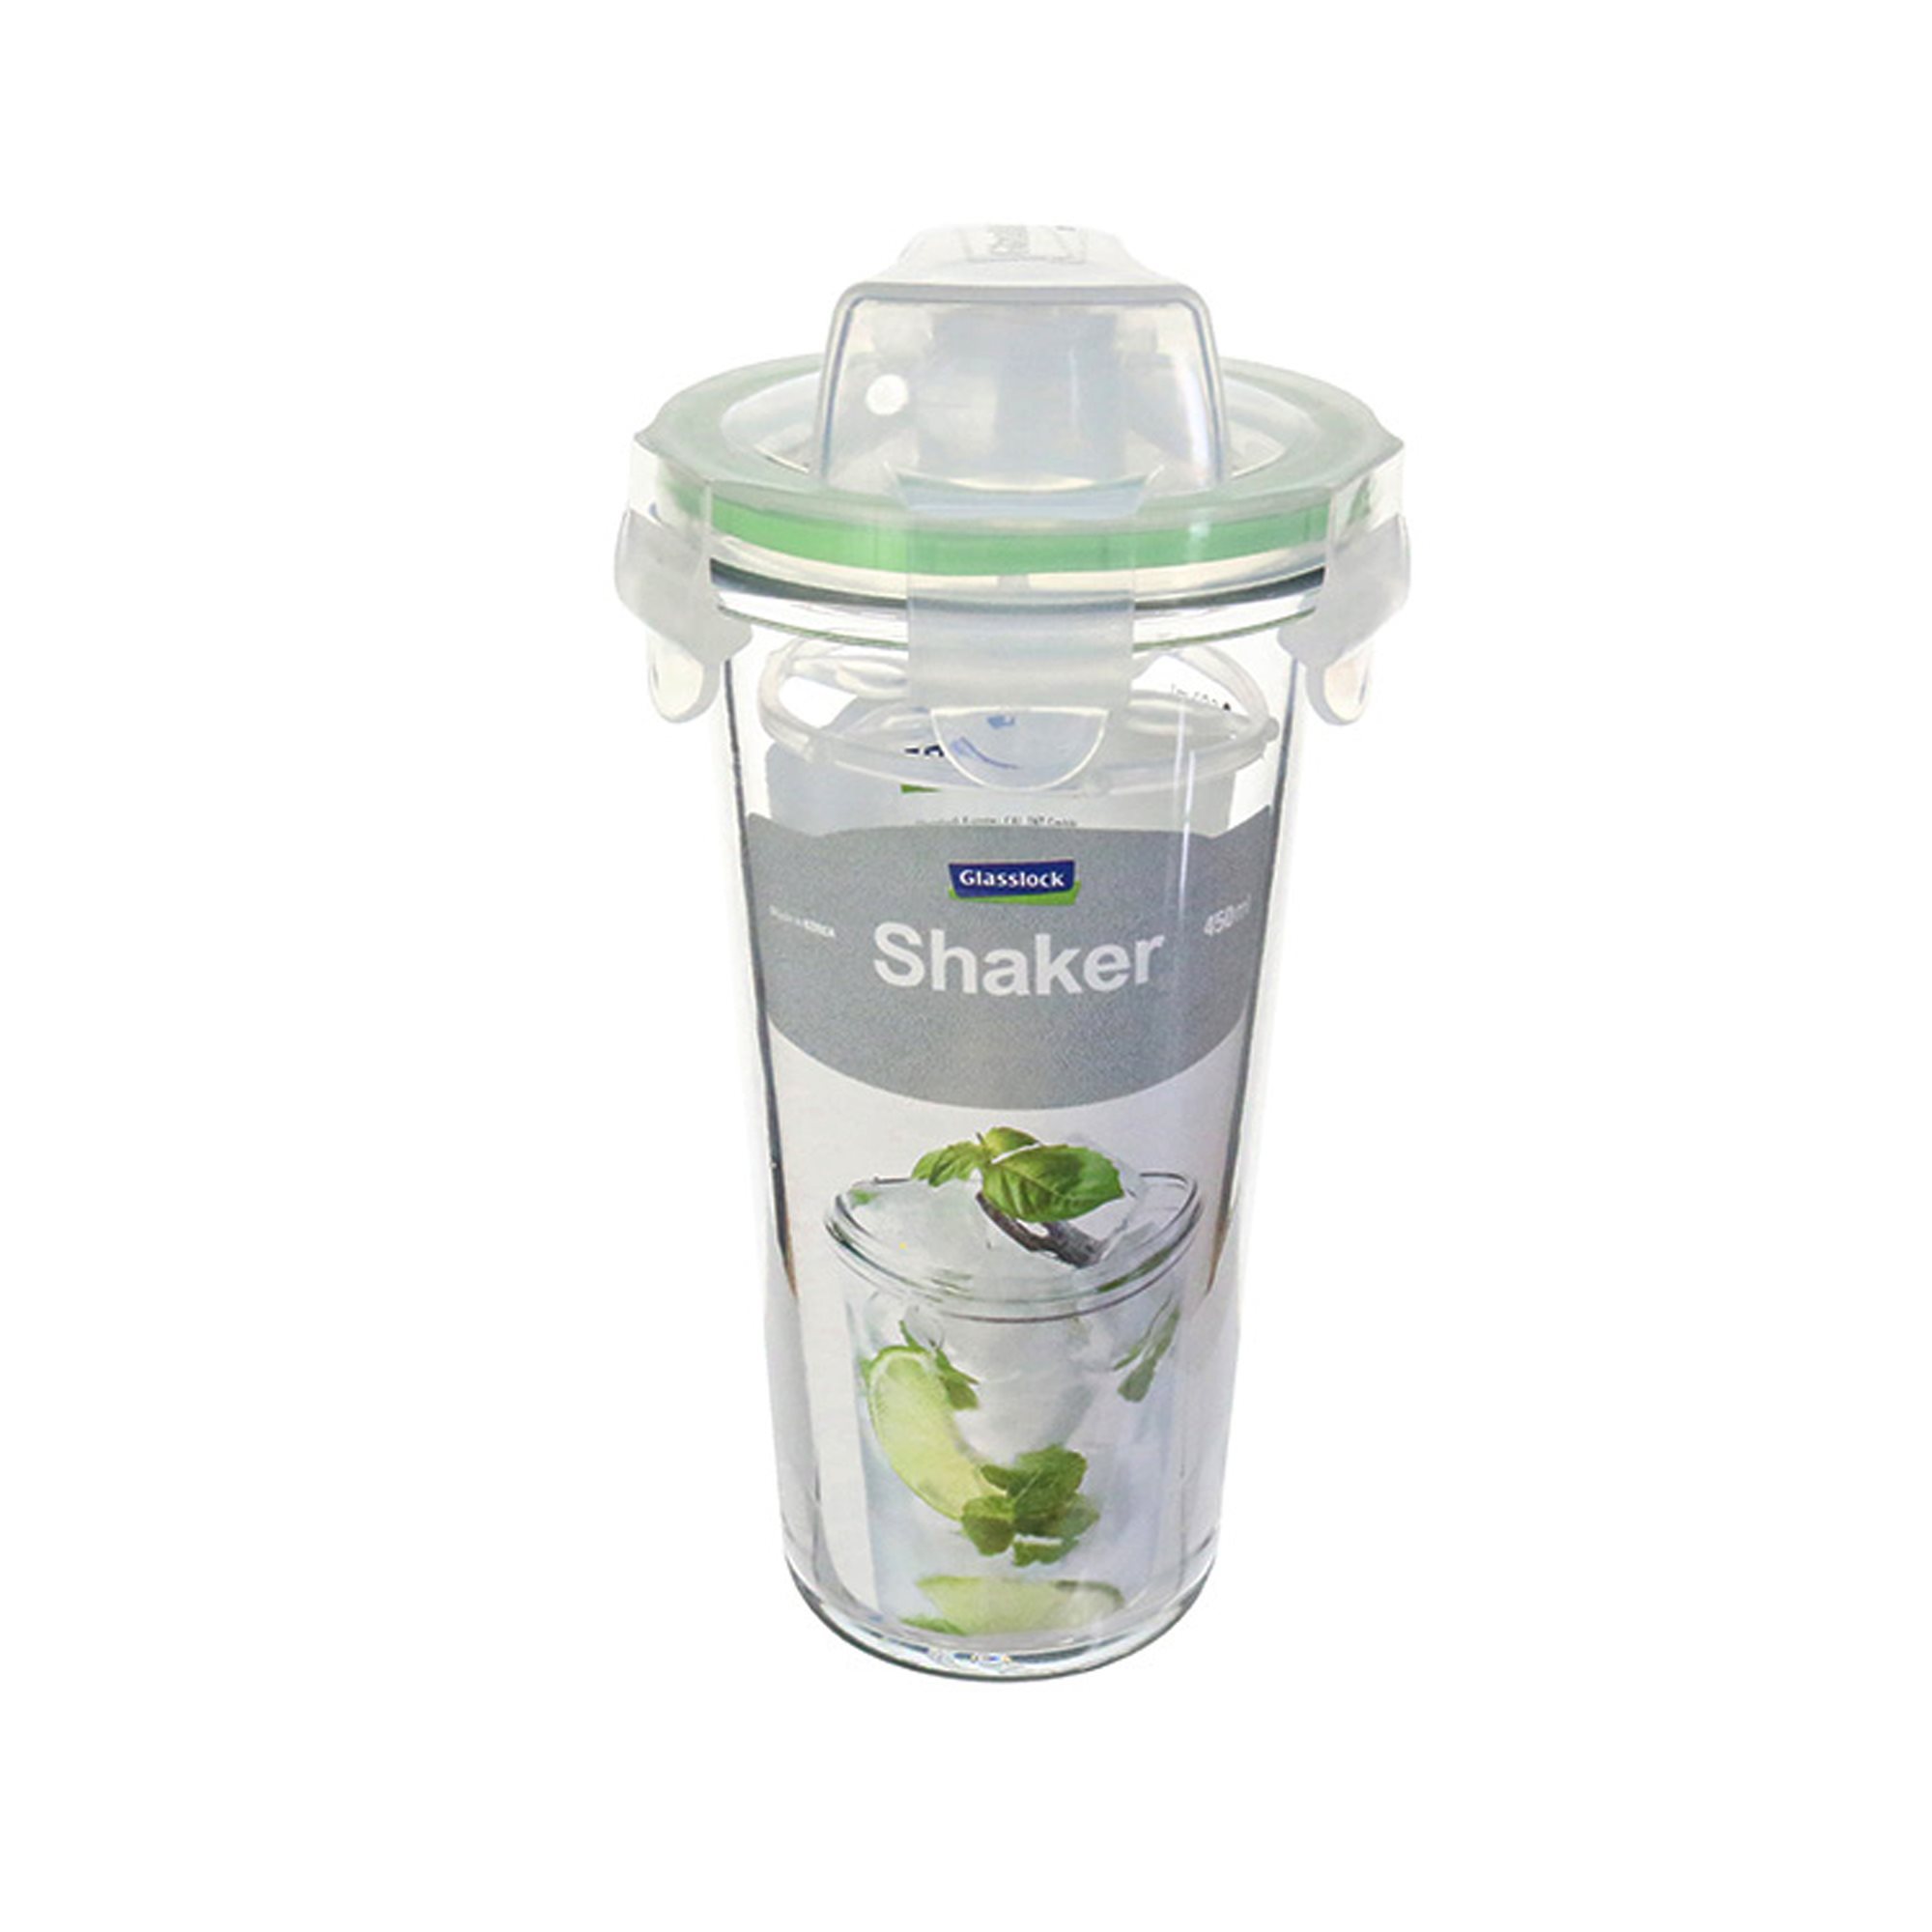 Glass shaker, 450 ml - KitchenShop Glasslock 